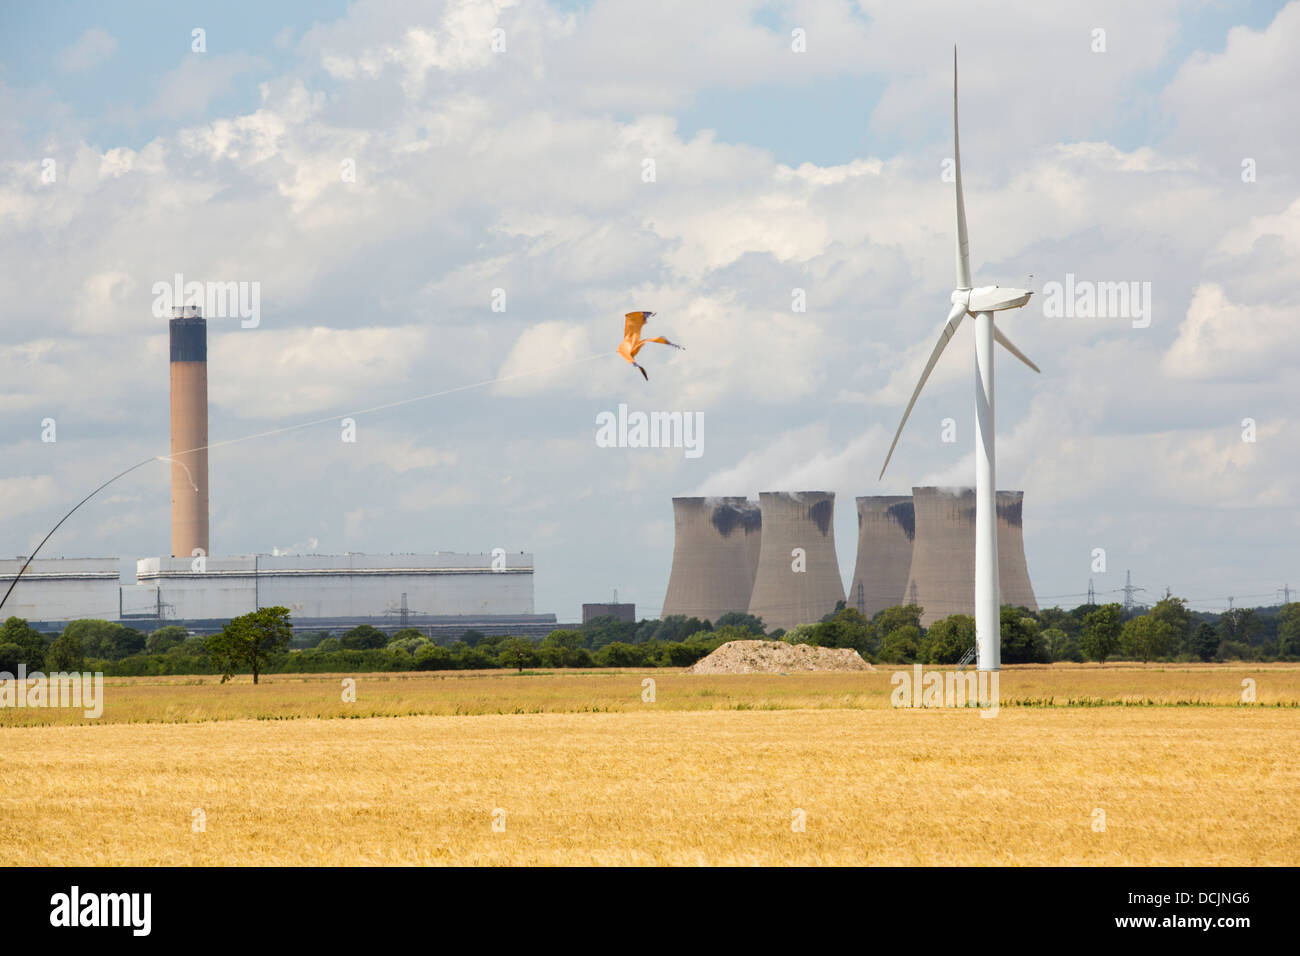 Drax power station dans le Yorkshire, est le plus grand émetteur de C02 en Europe Banque D'Images